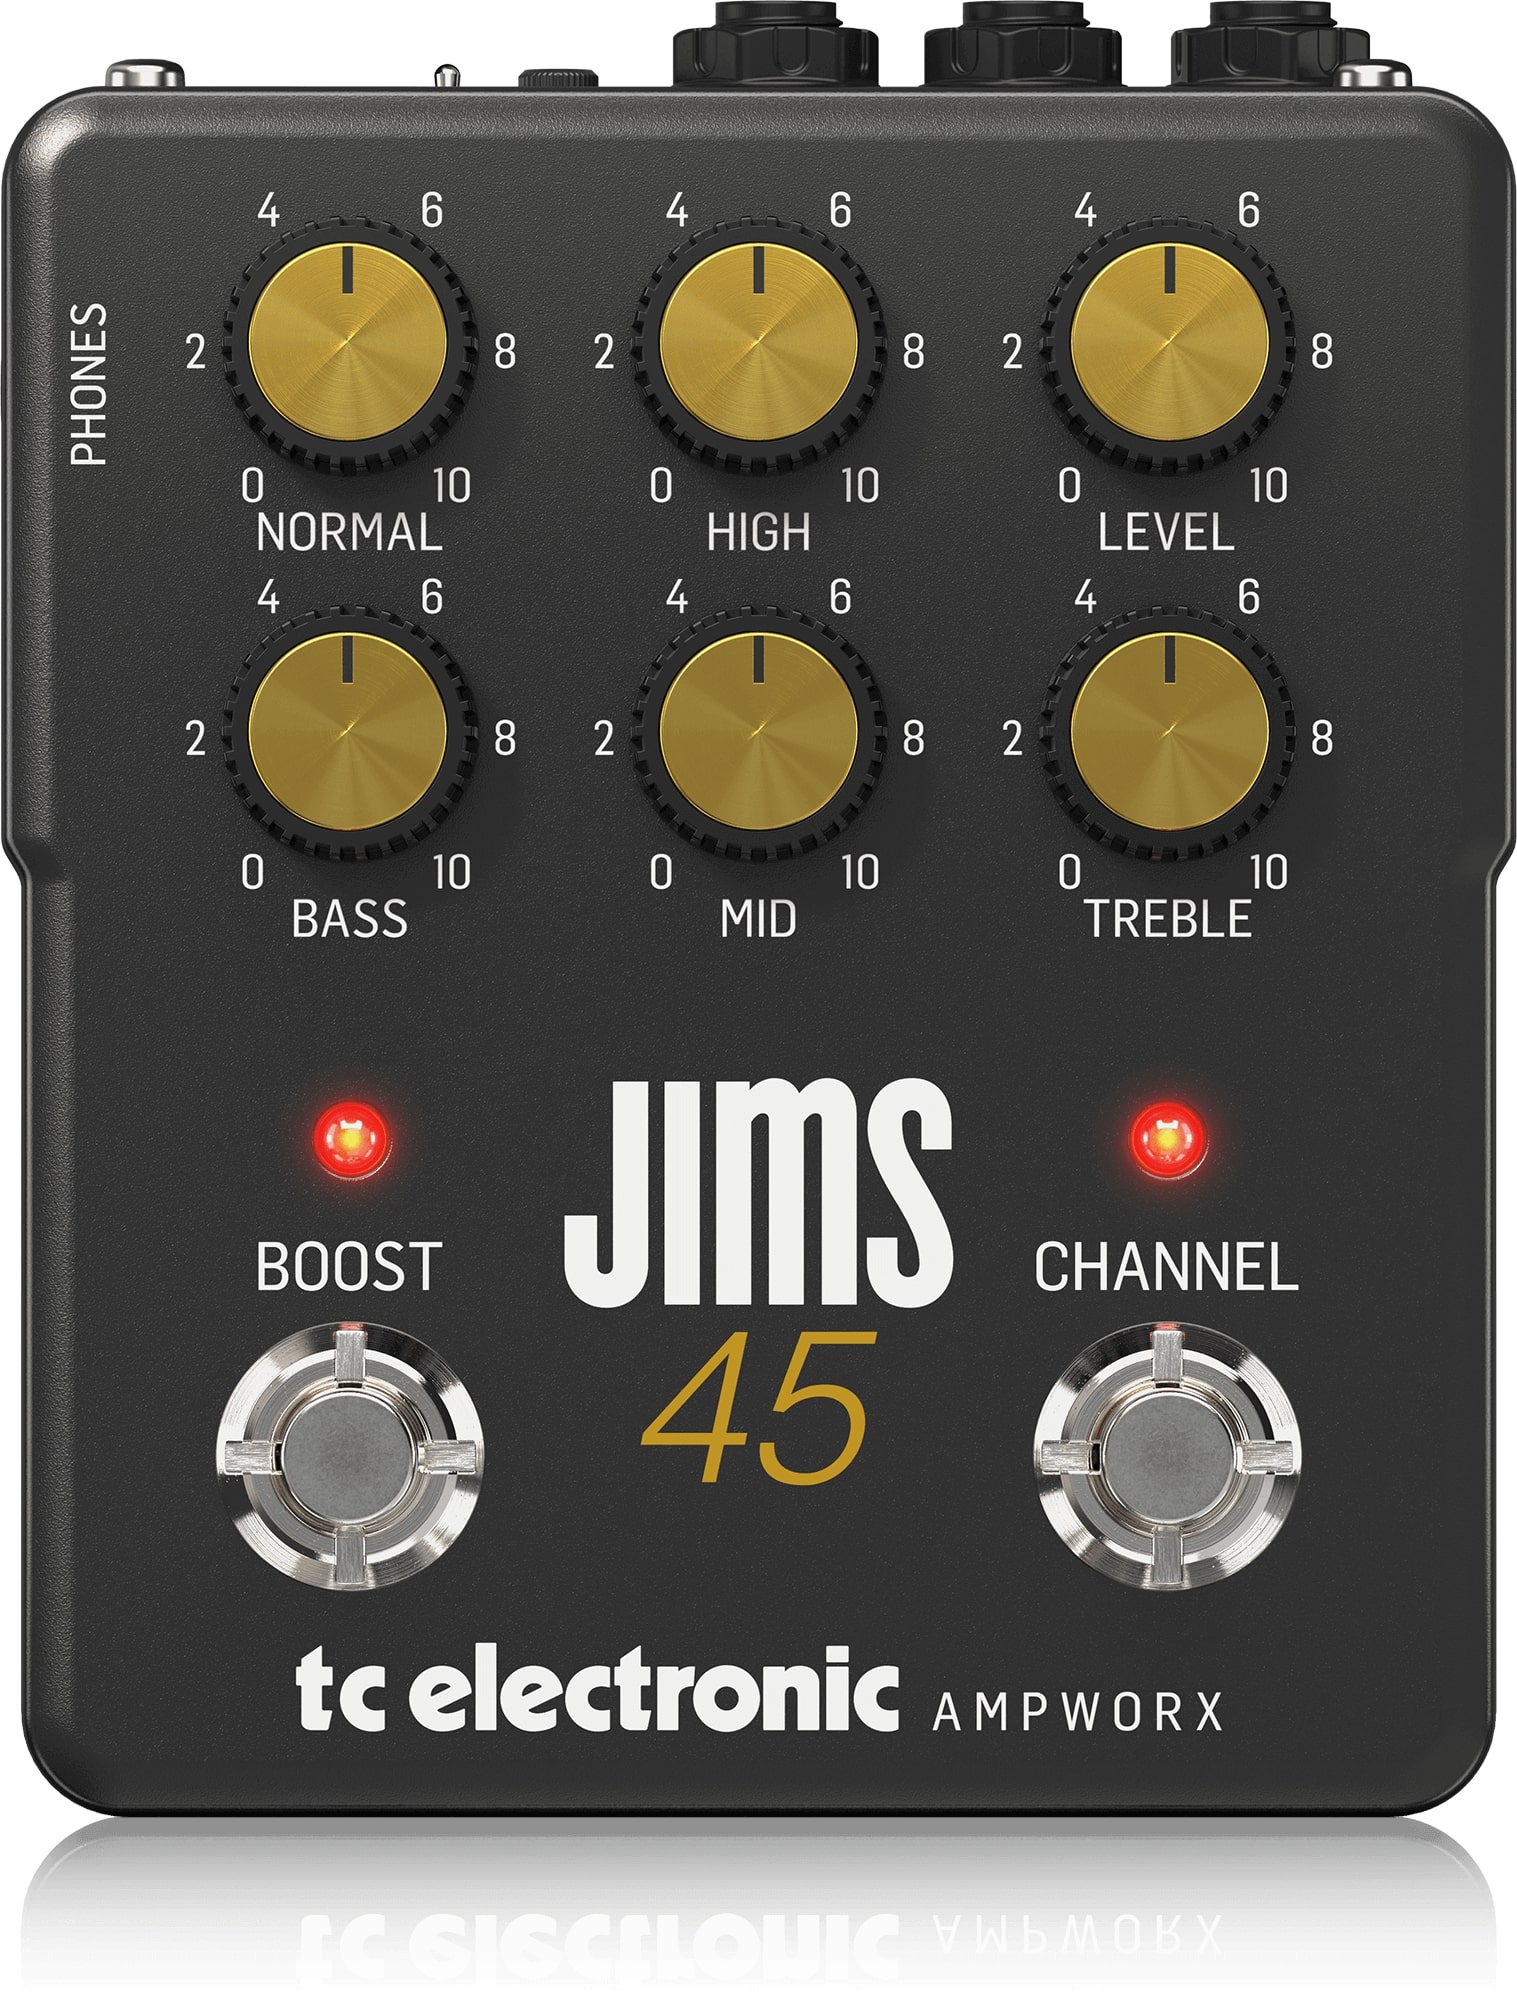 Гитарные усилители TC ELECTRONIC JIMS 45 PREAMP гитарные усилители tc electronic jims 45 preamp